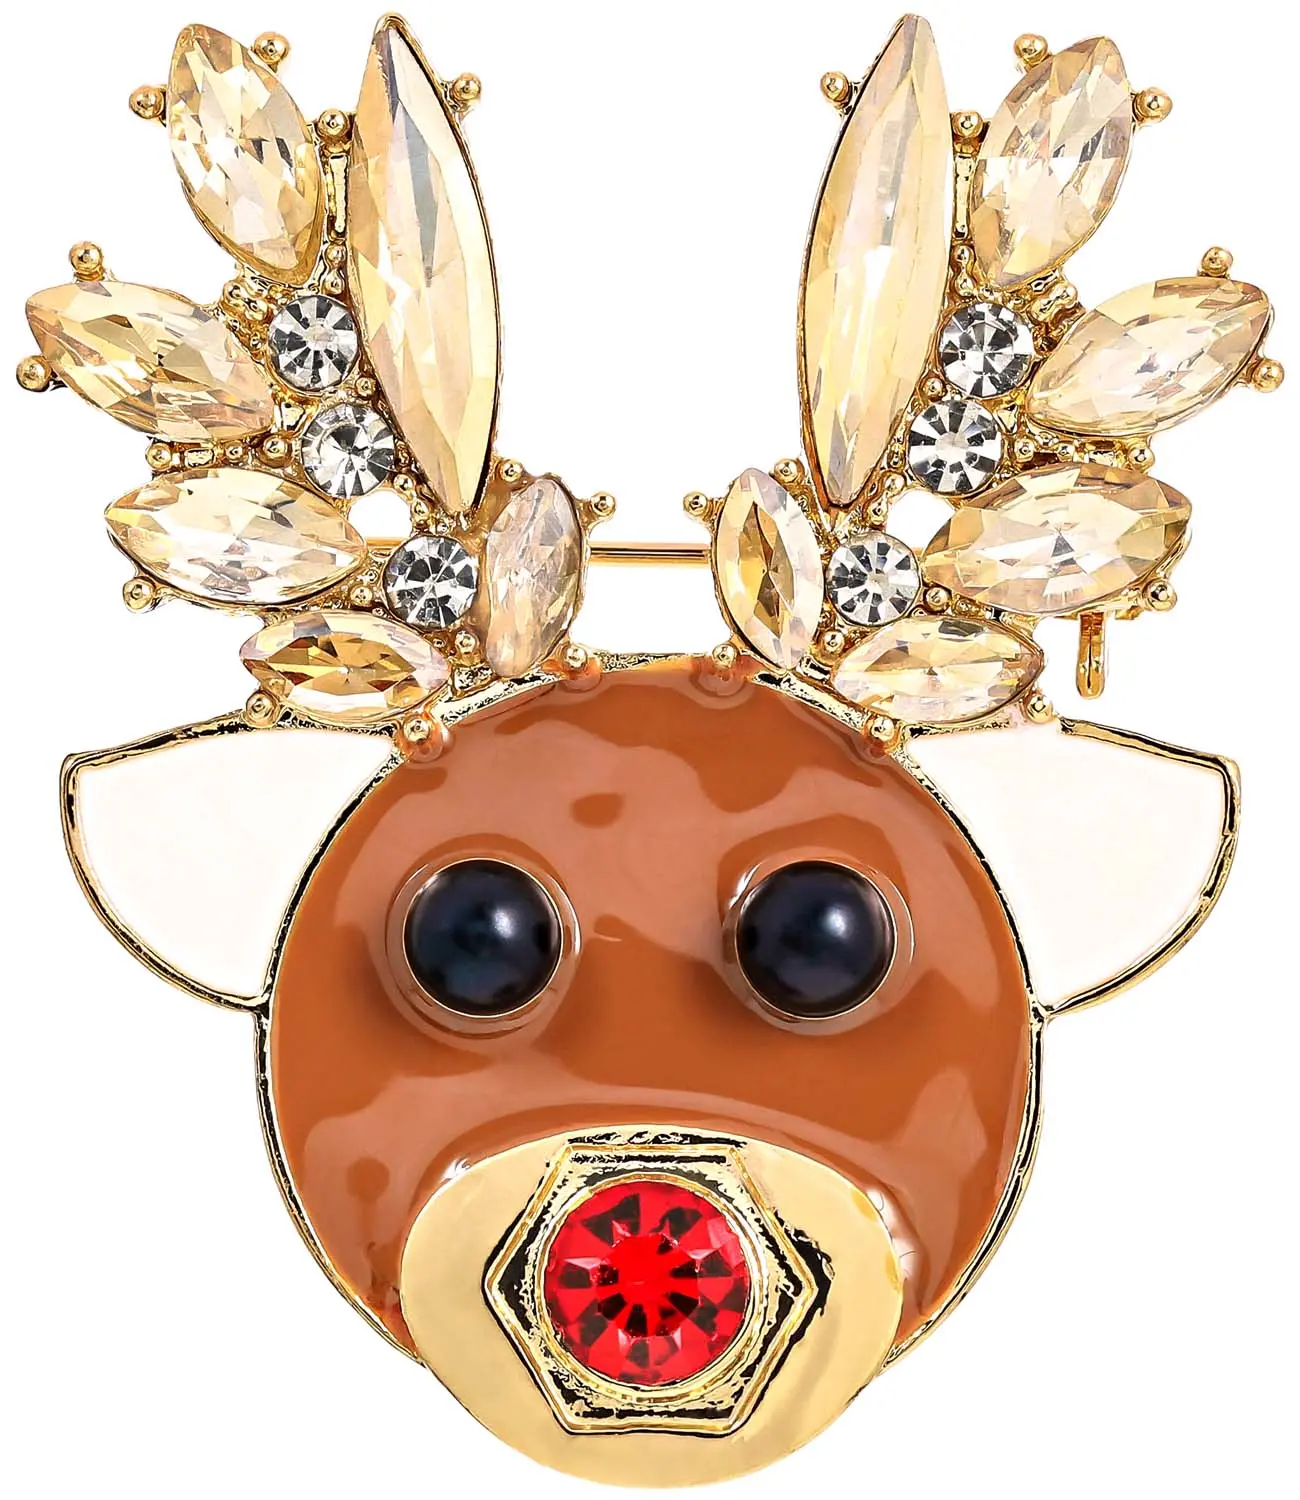 Spilla - Adorable Rudolph